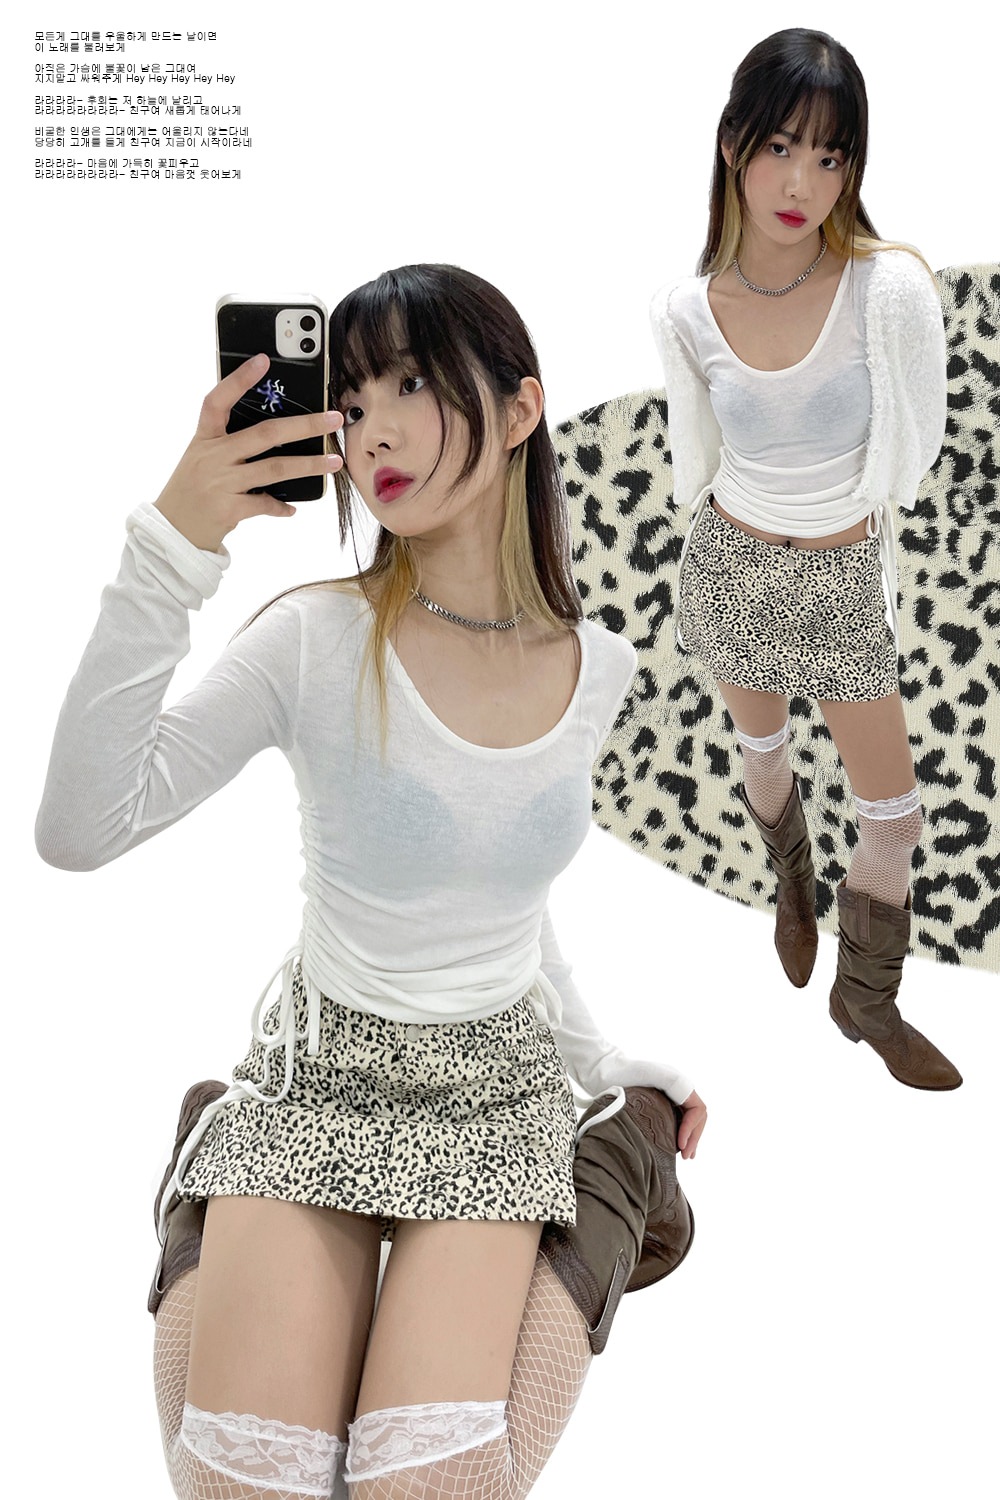 lowrise pattern mini skirts (leopard)